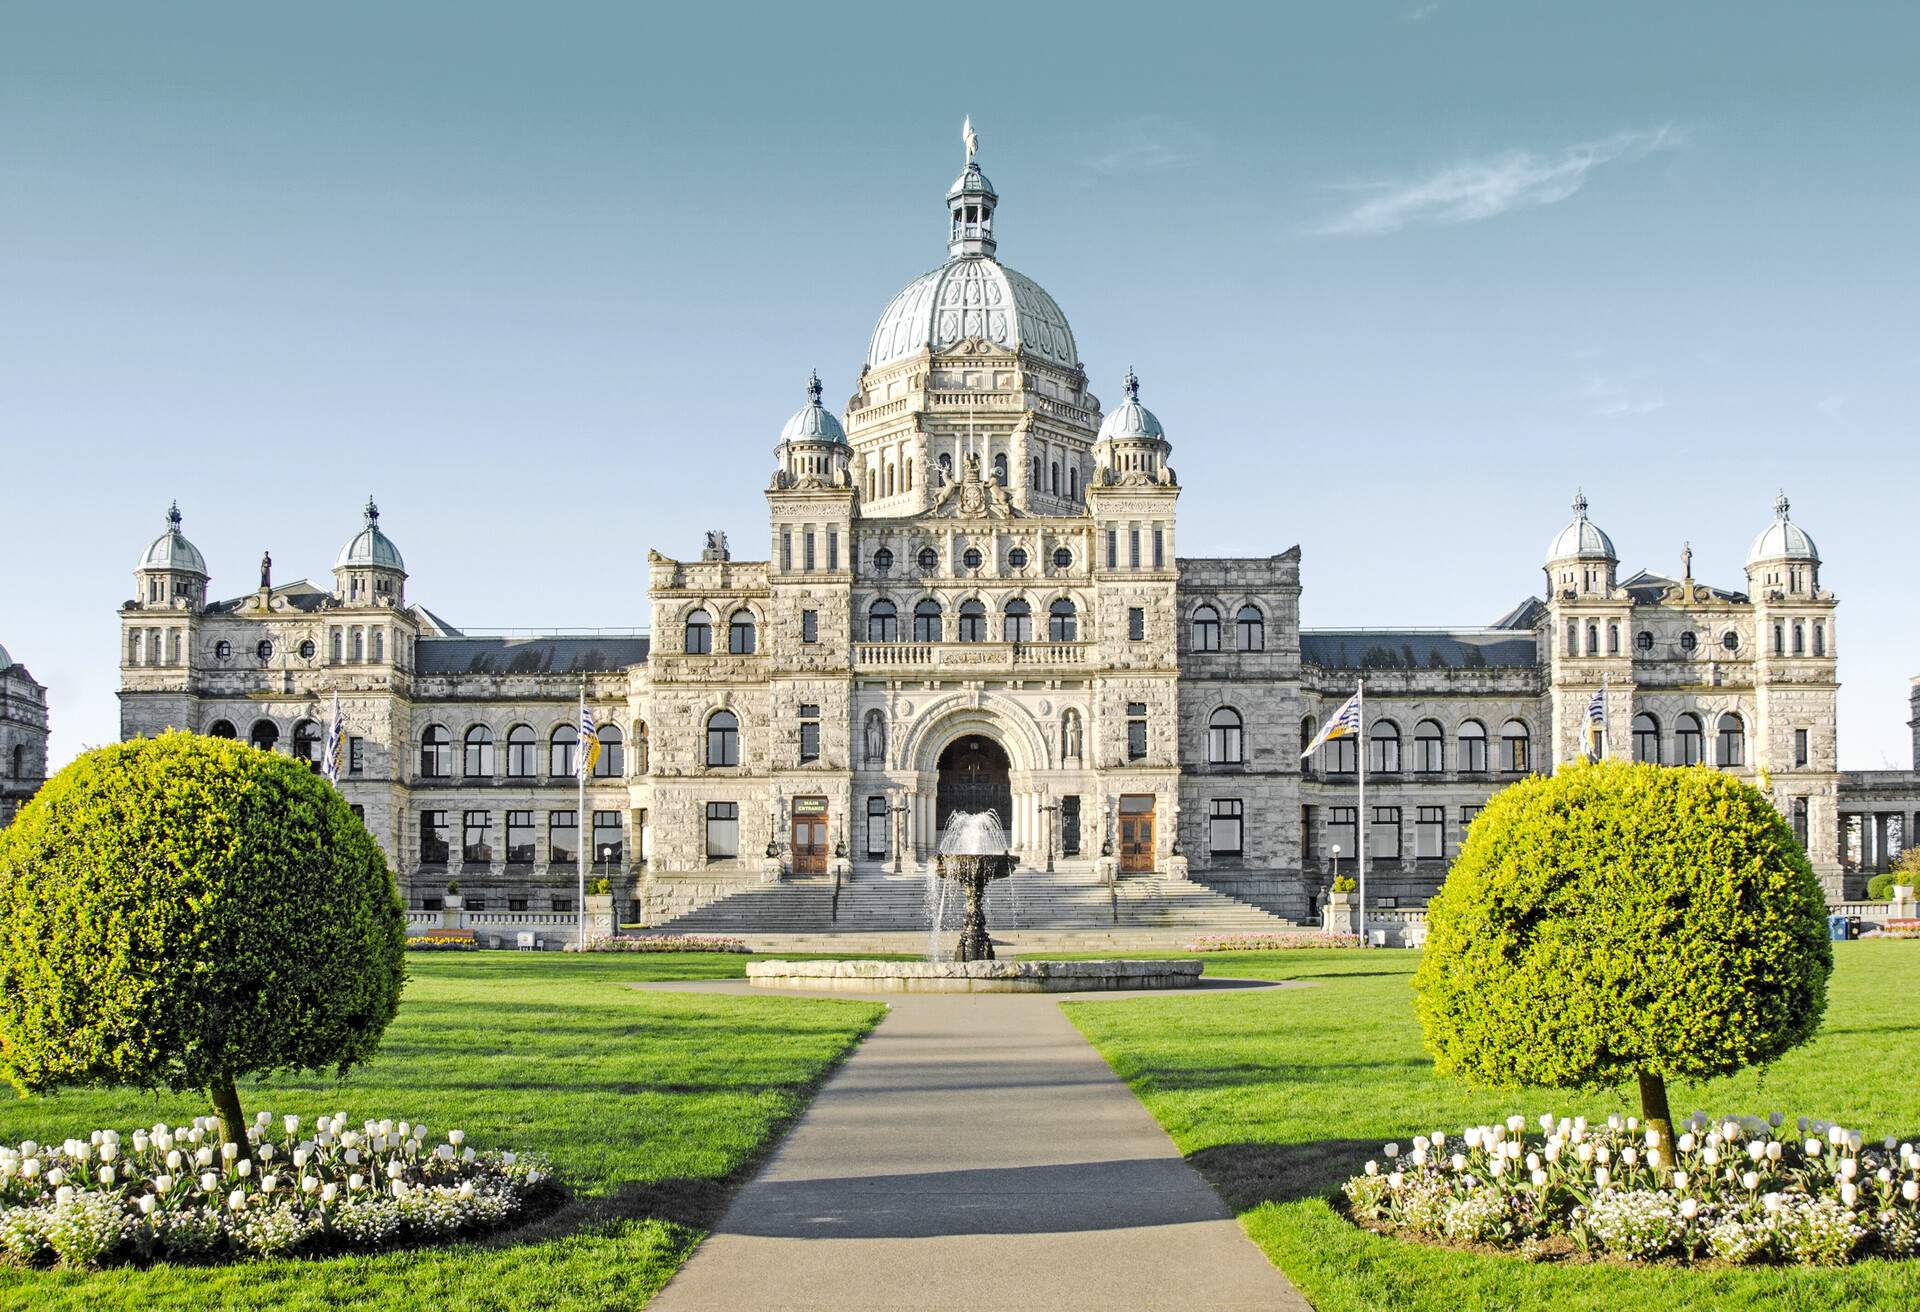 Parliament Building in Victoria, British Columbia